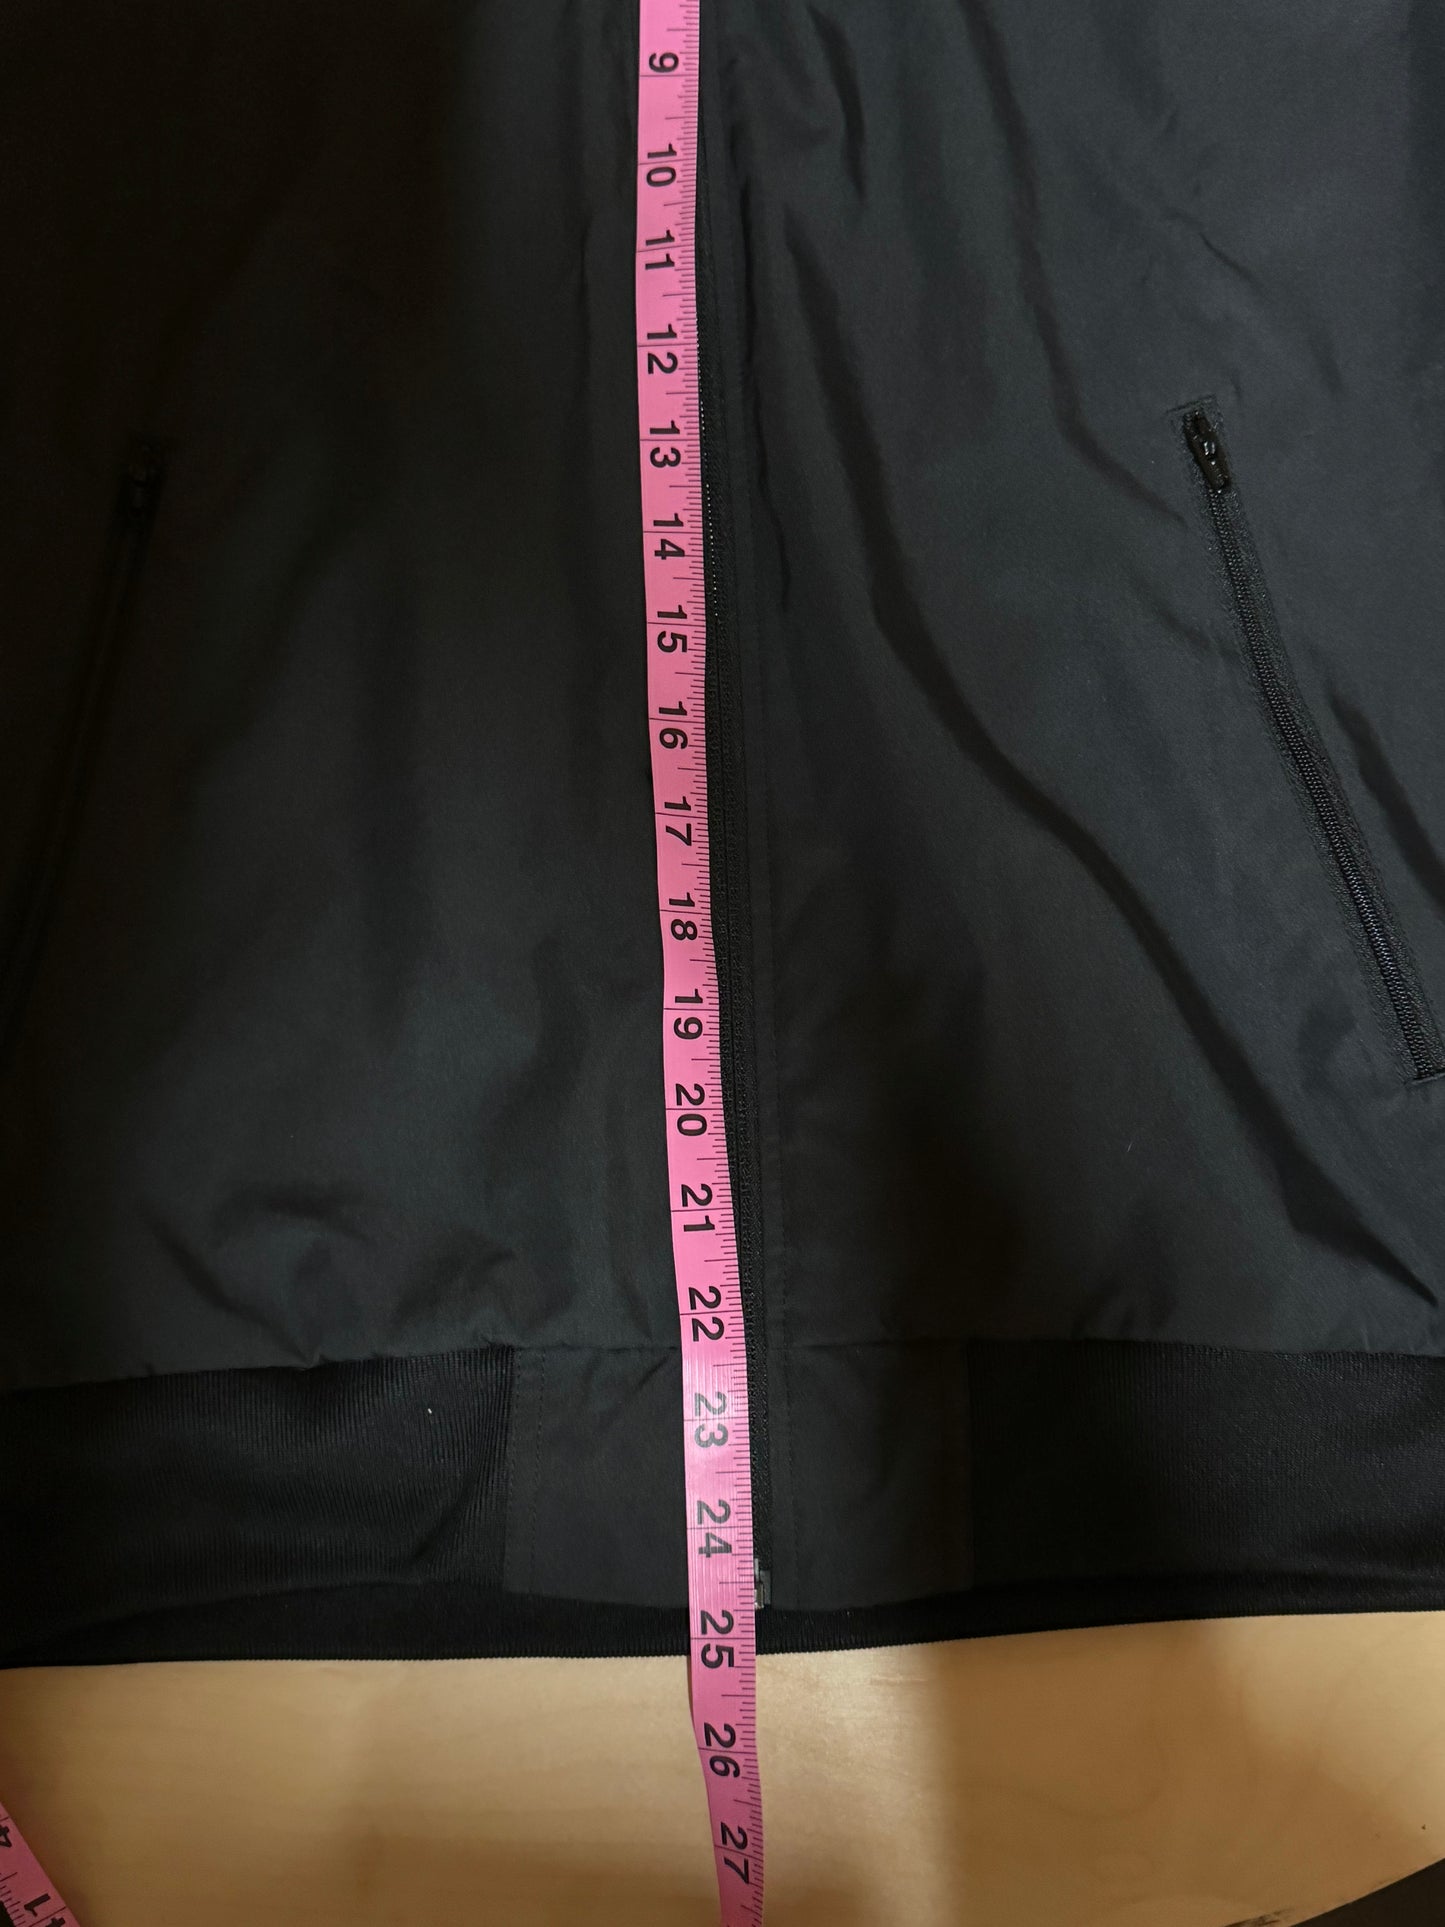 Adidas Juventus Men's Zip up Jacket Black - Size S